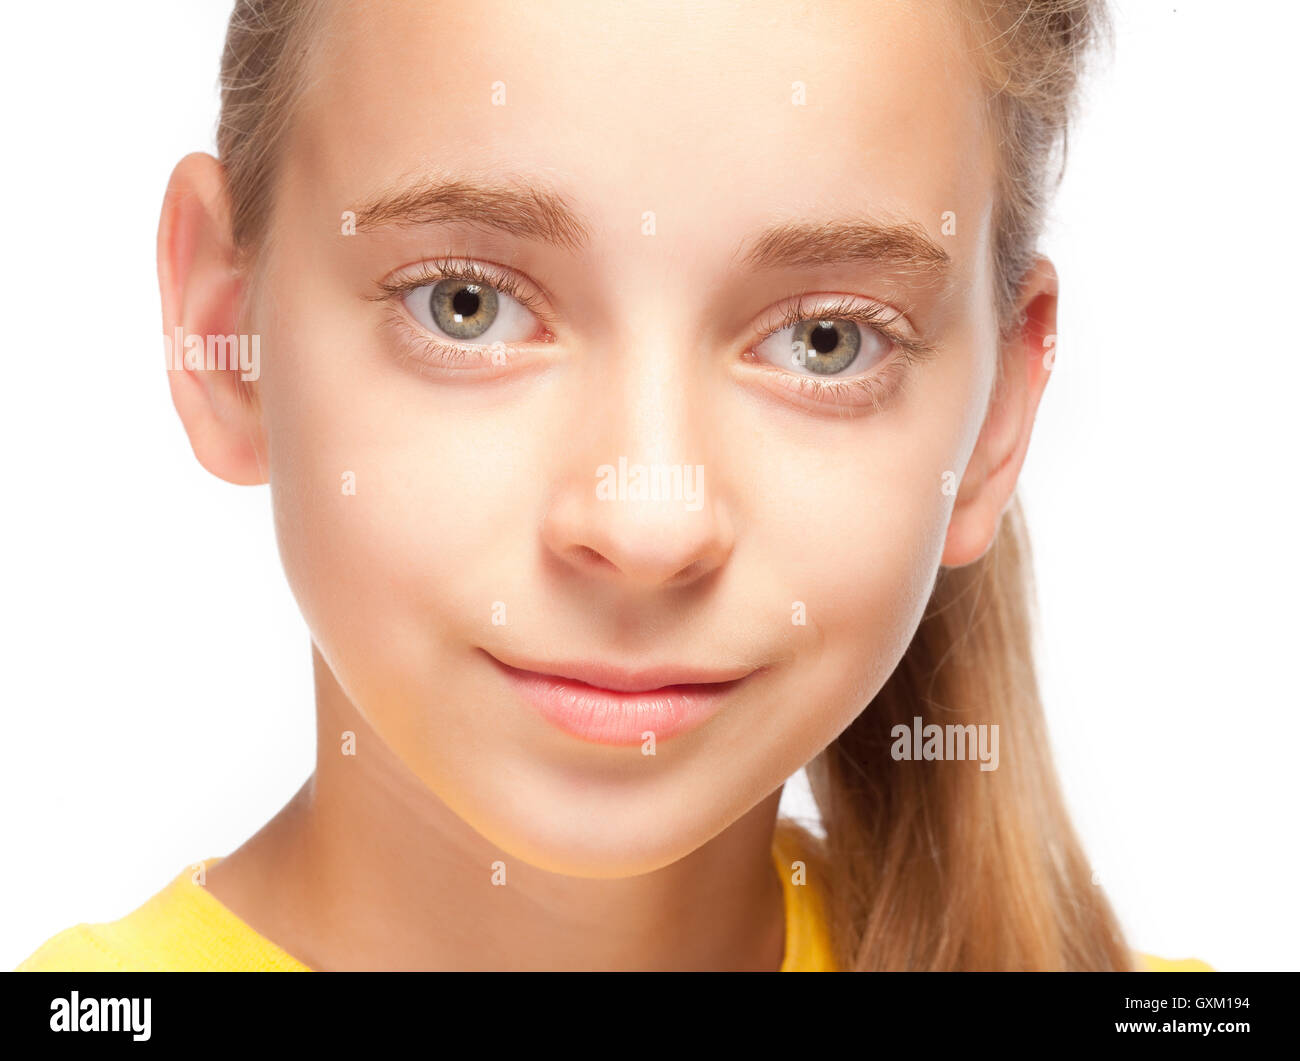 Porträt eines schönen jungen Mädchens mit langen blonden Haaren Stockfoto